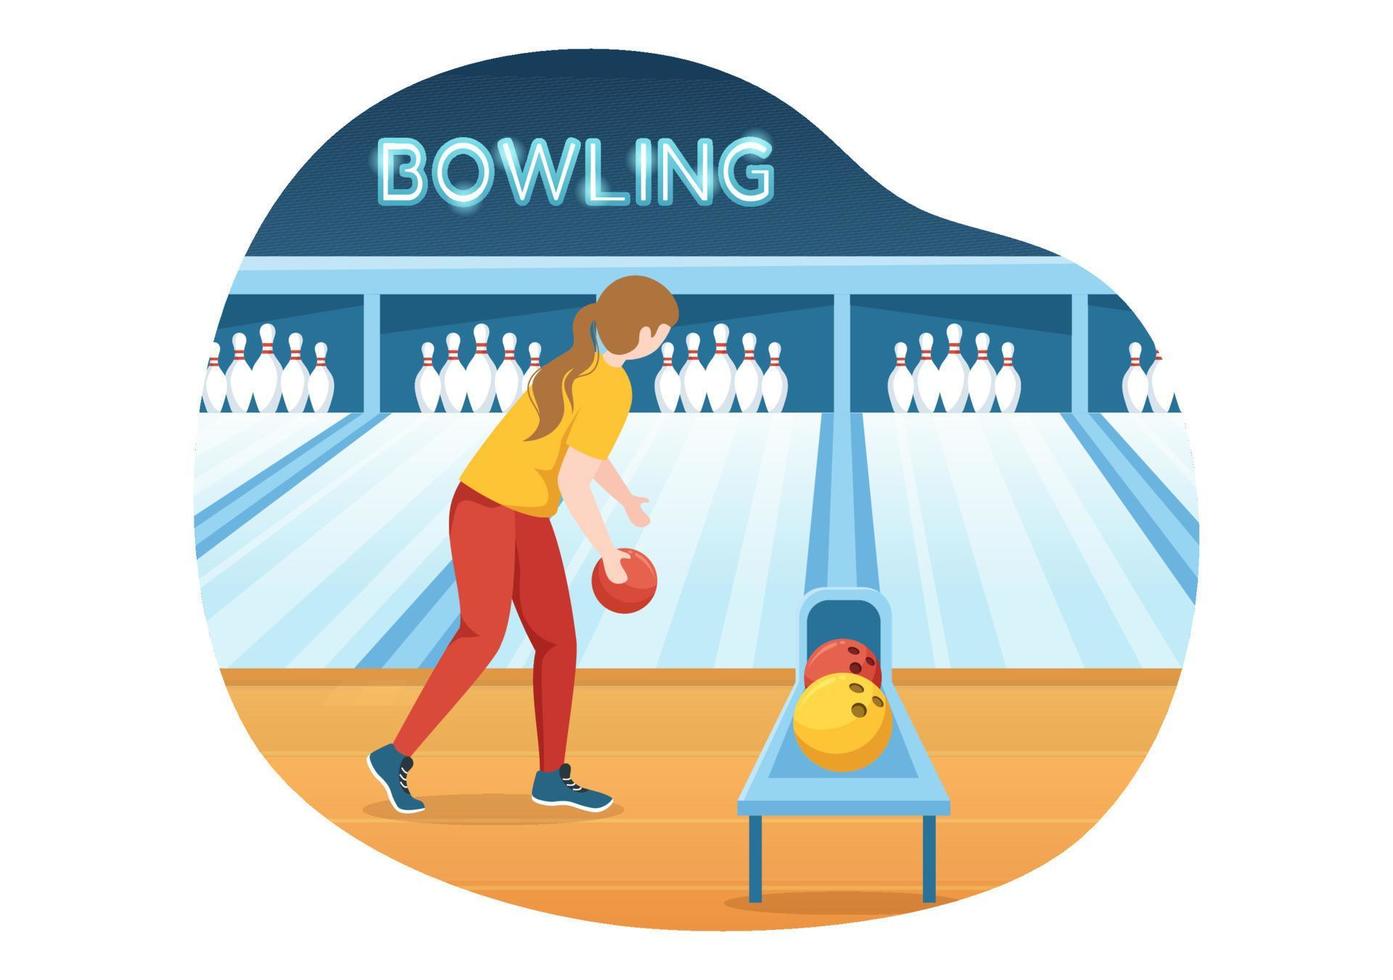 bowlingspielillustration mit stiften, bällen und anzeigetafeln in einem sportverein für webbanner oder zielseite in flachen handgezeichneten karikaturvorlagen vektor